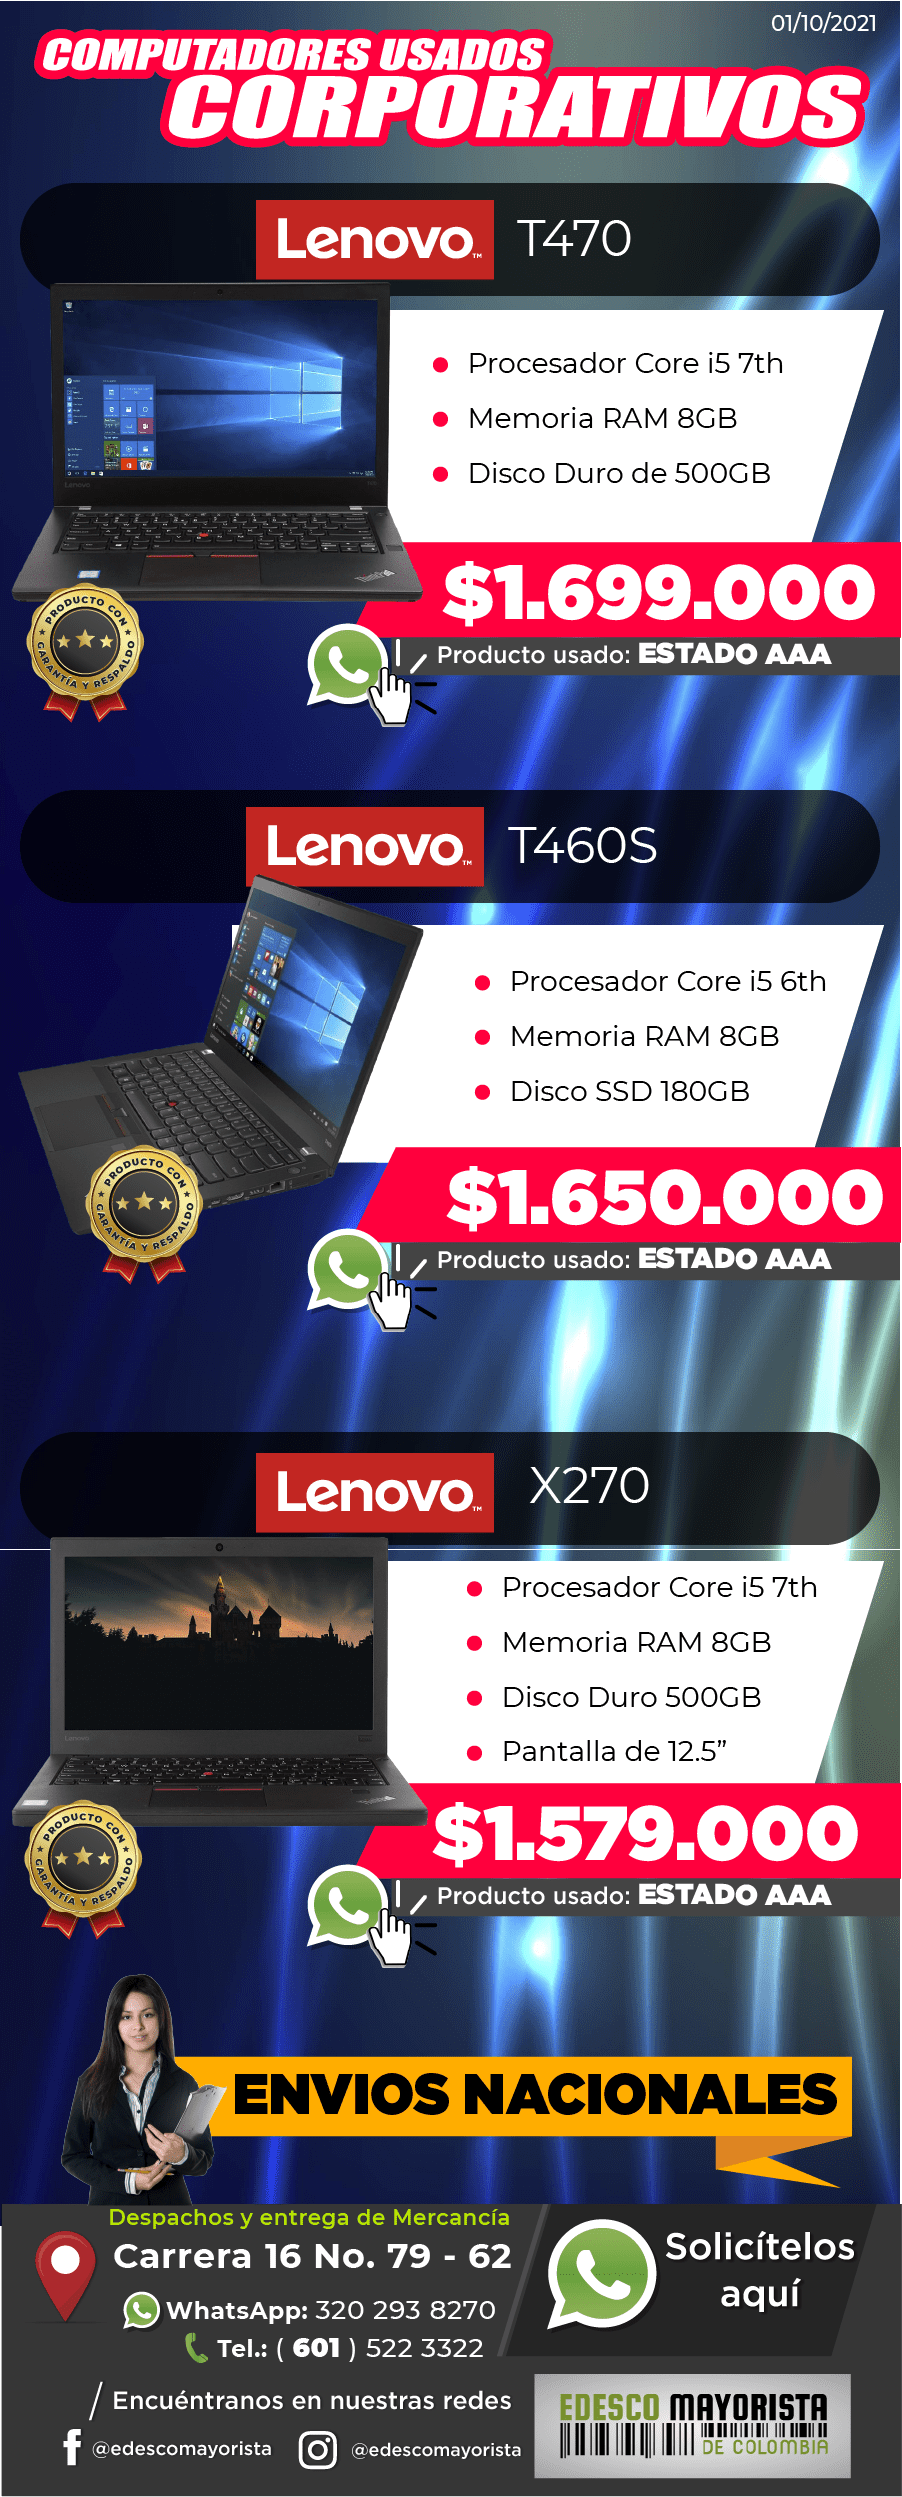 Portatiles Lenovo T470 - T460S - X270